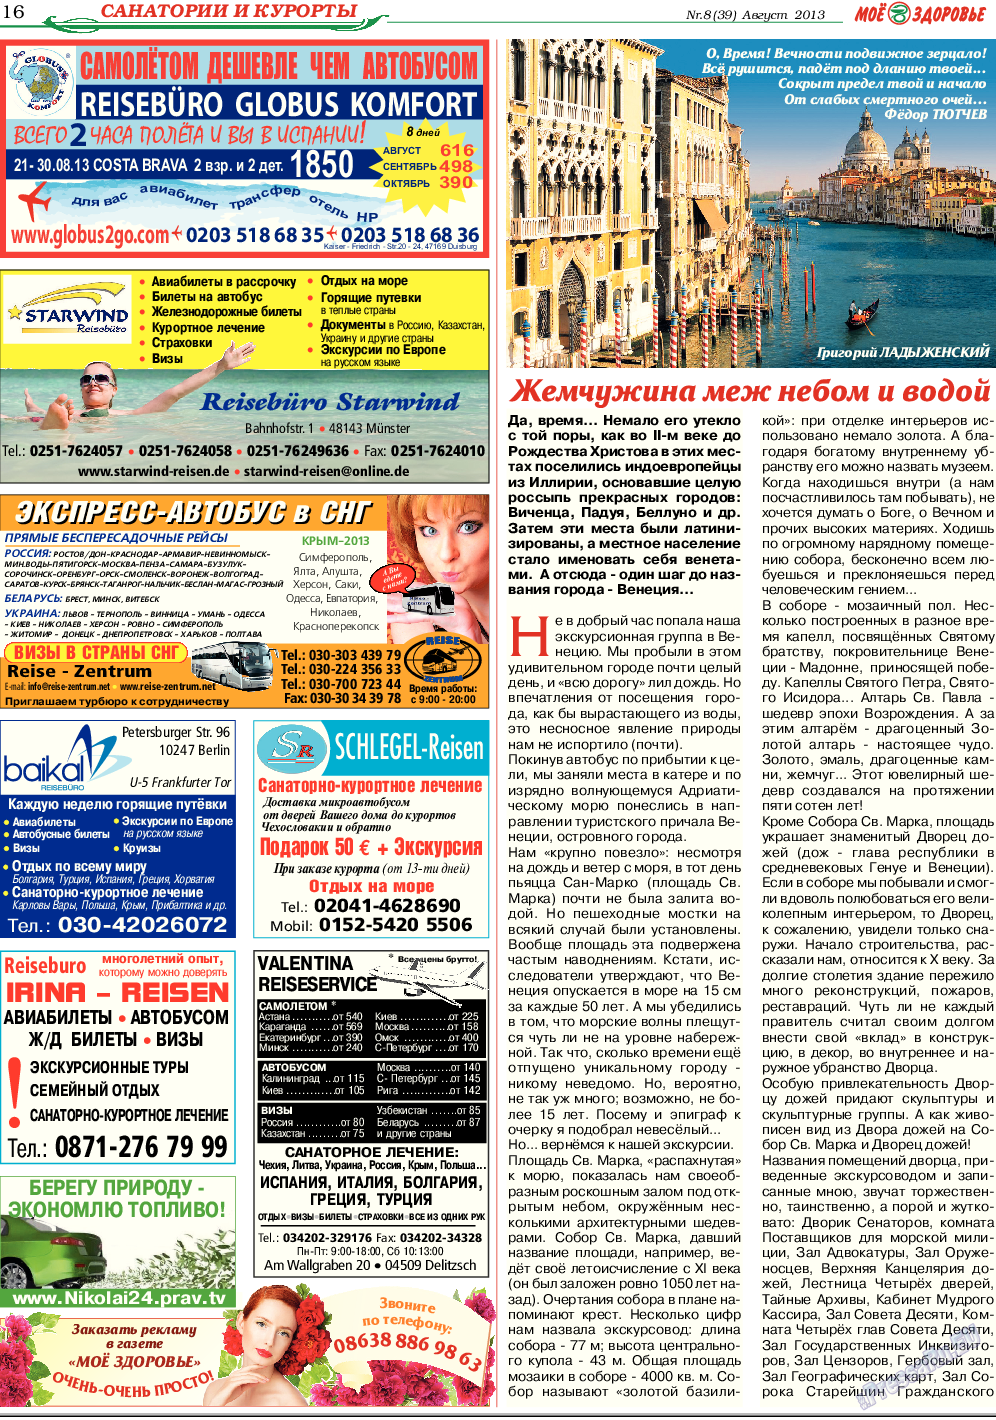 Кругозор, газета. 2013 №8 стр.16